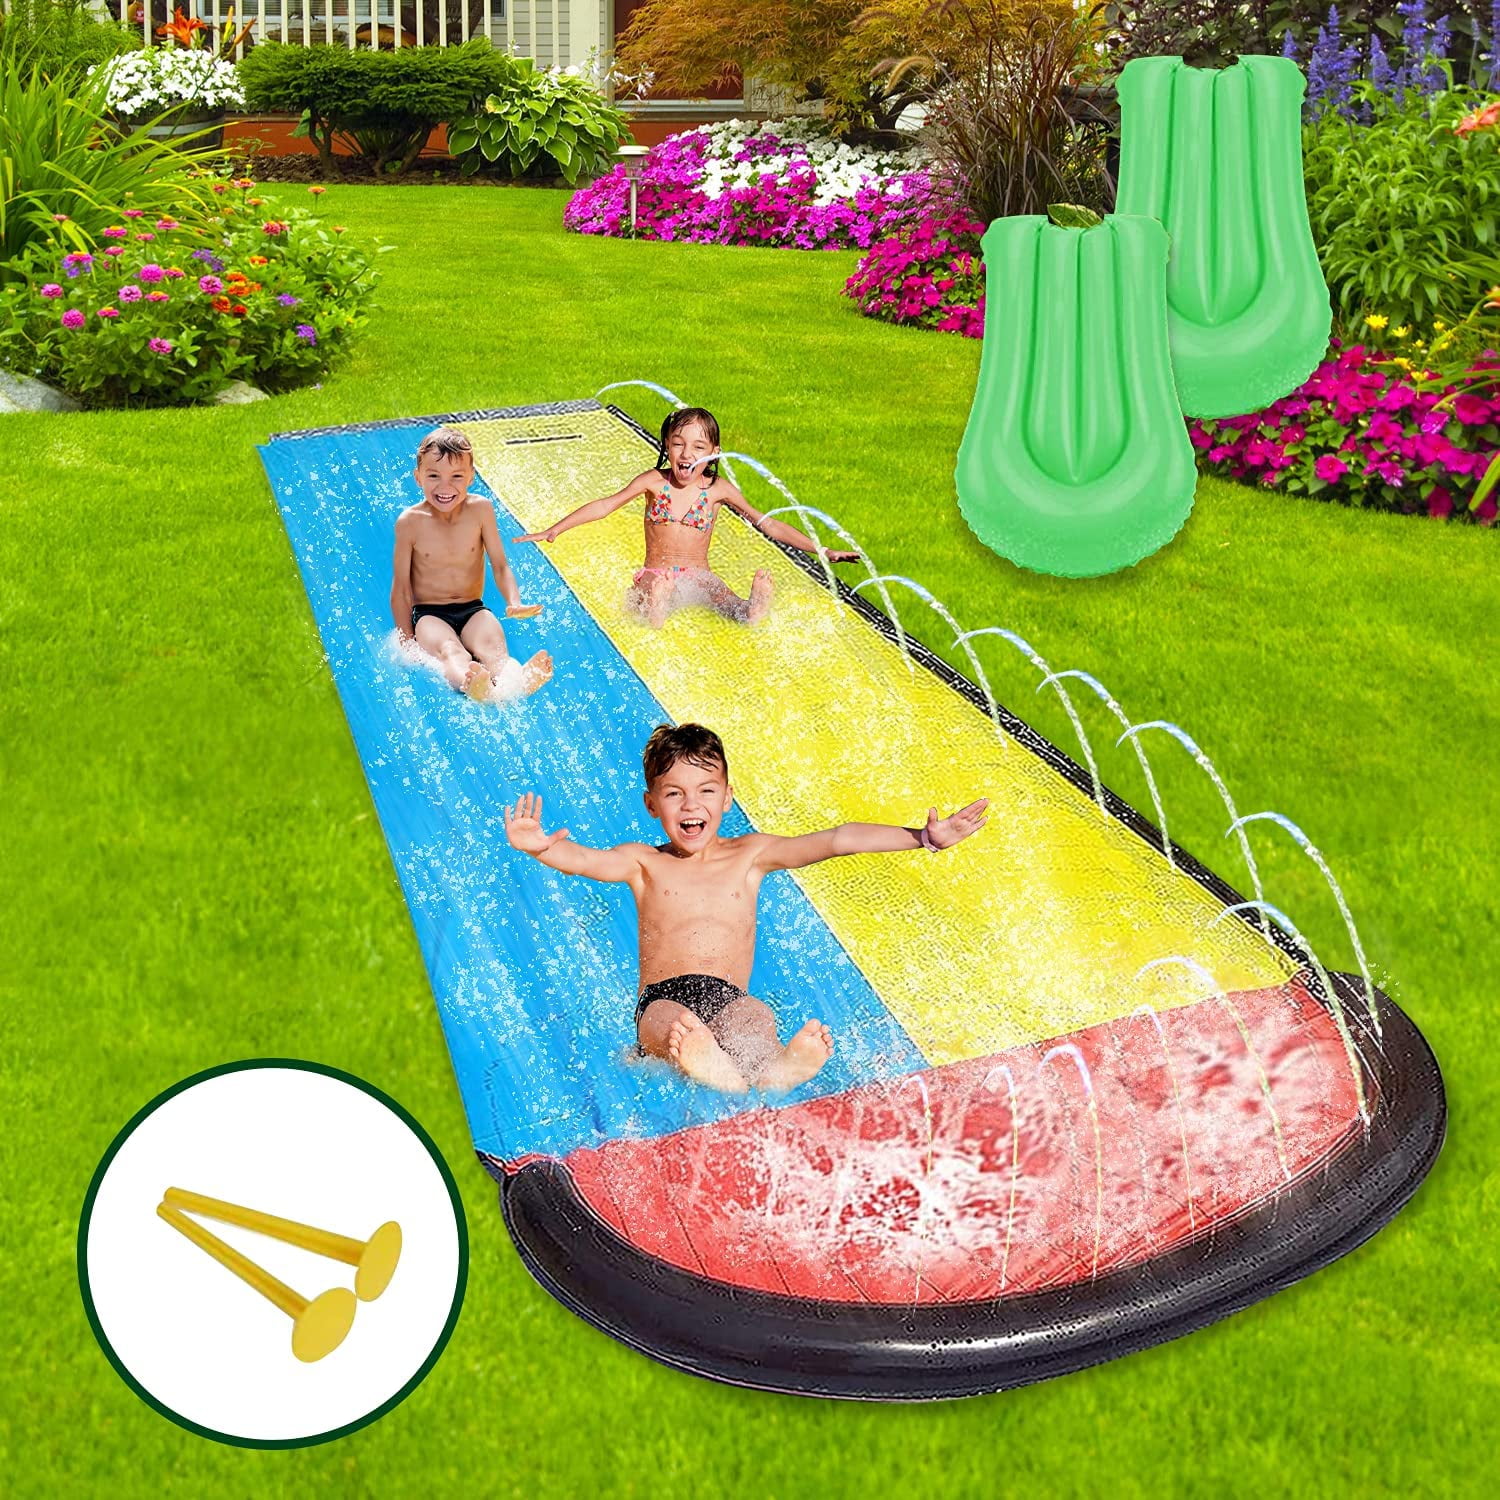 Slides Splash Down Inflatable Water outdoor summer fun garden toy water slide 